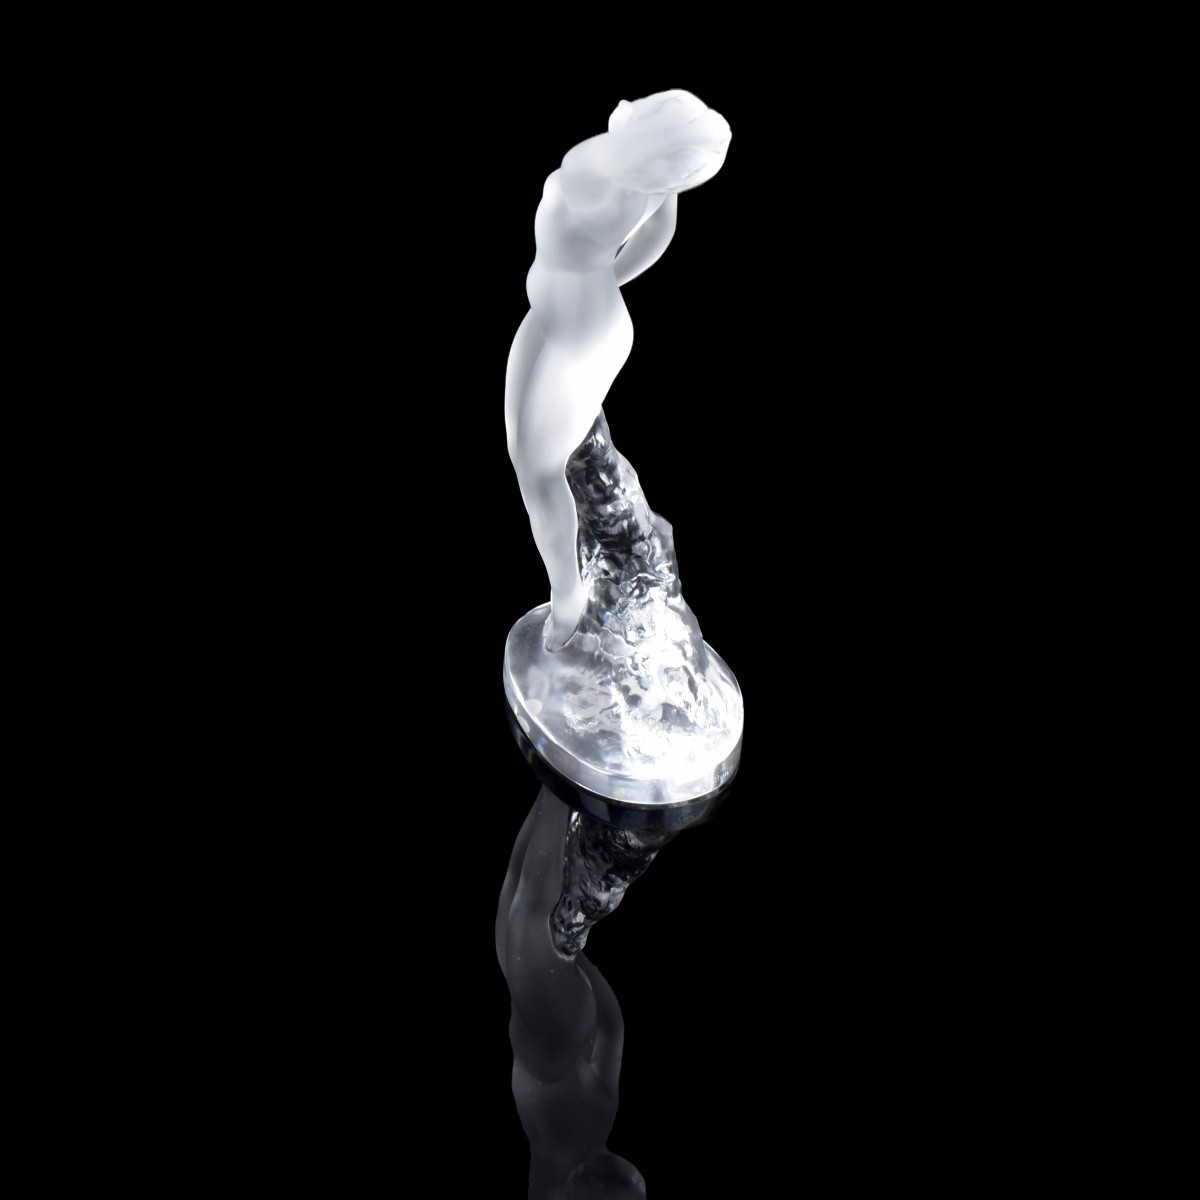 Lalique "Danseuse" Crystal Figurine